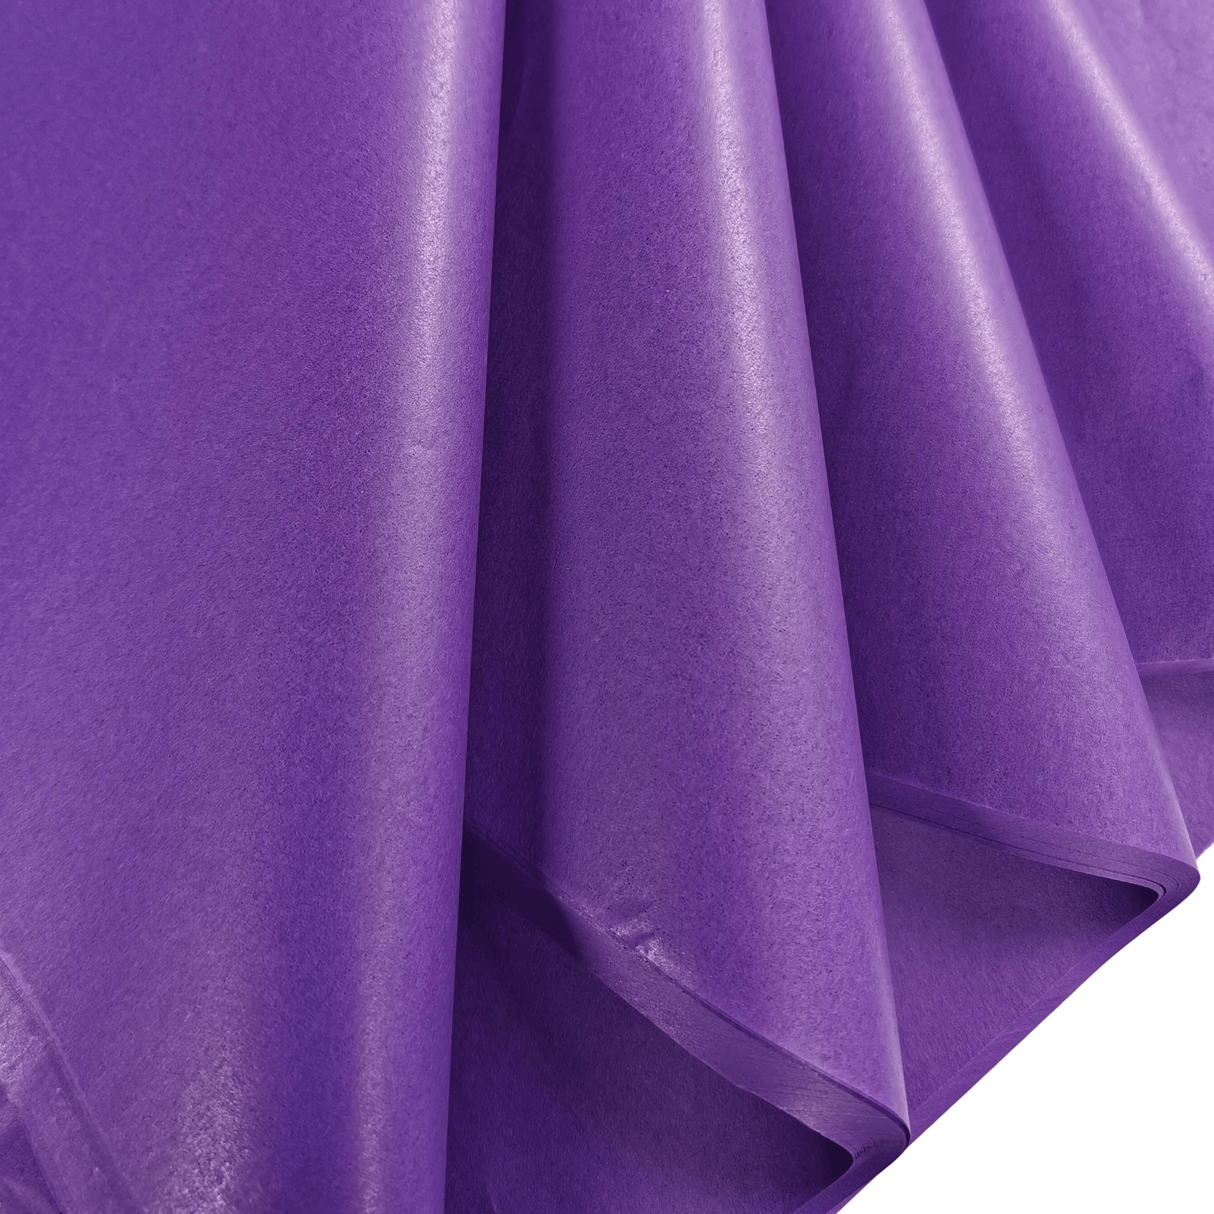 Violet Tissue Paper Folds 2